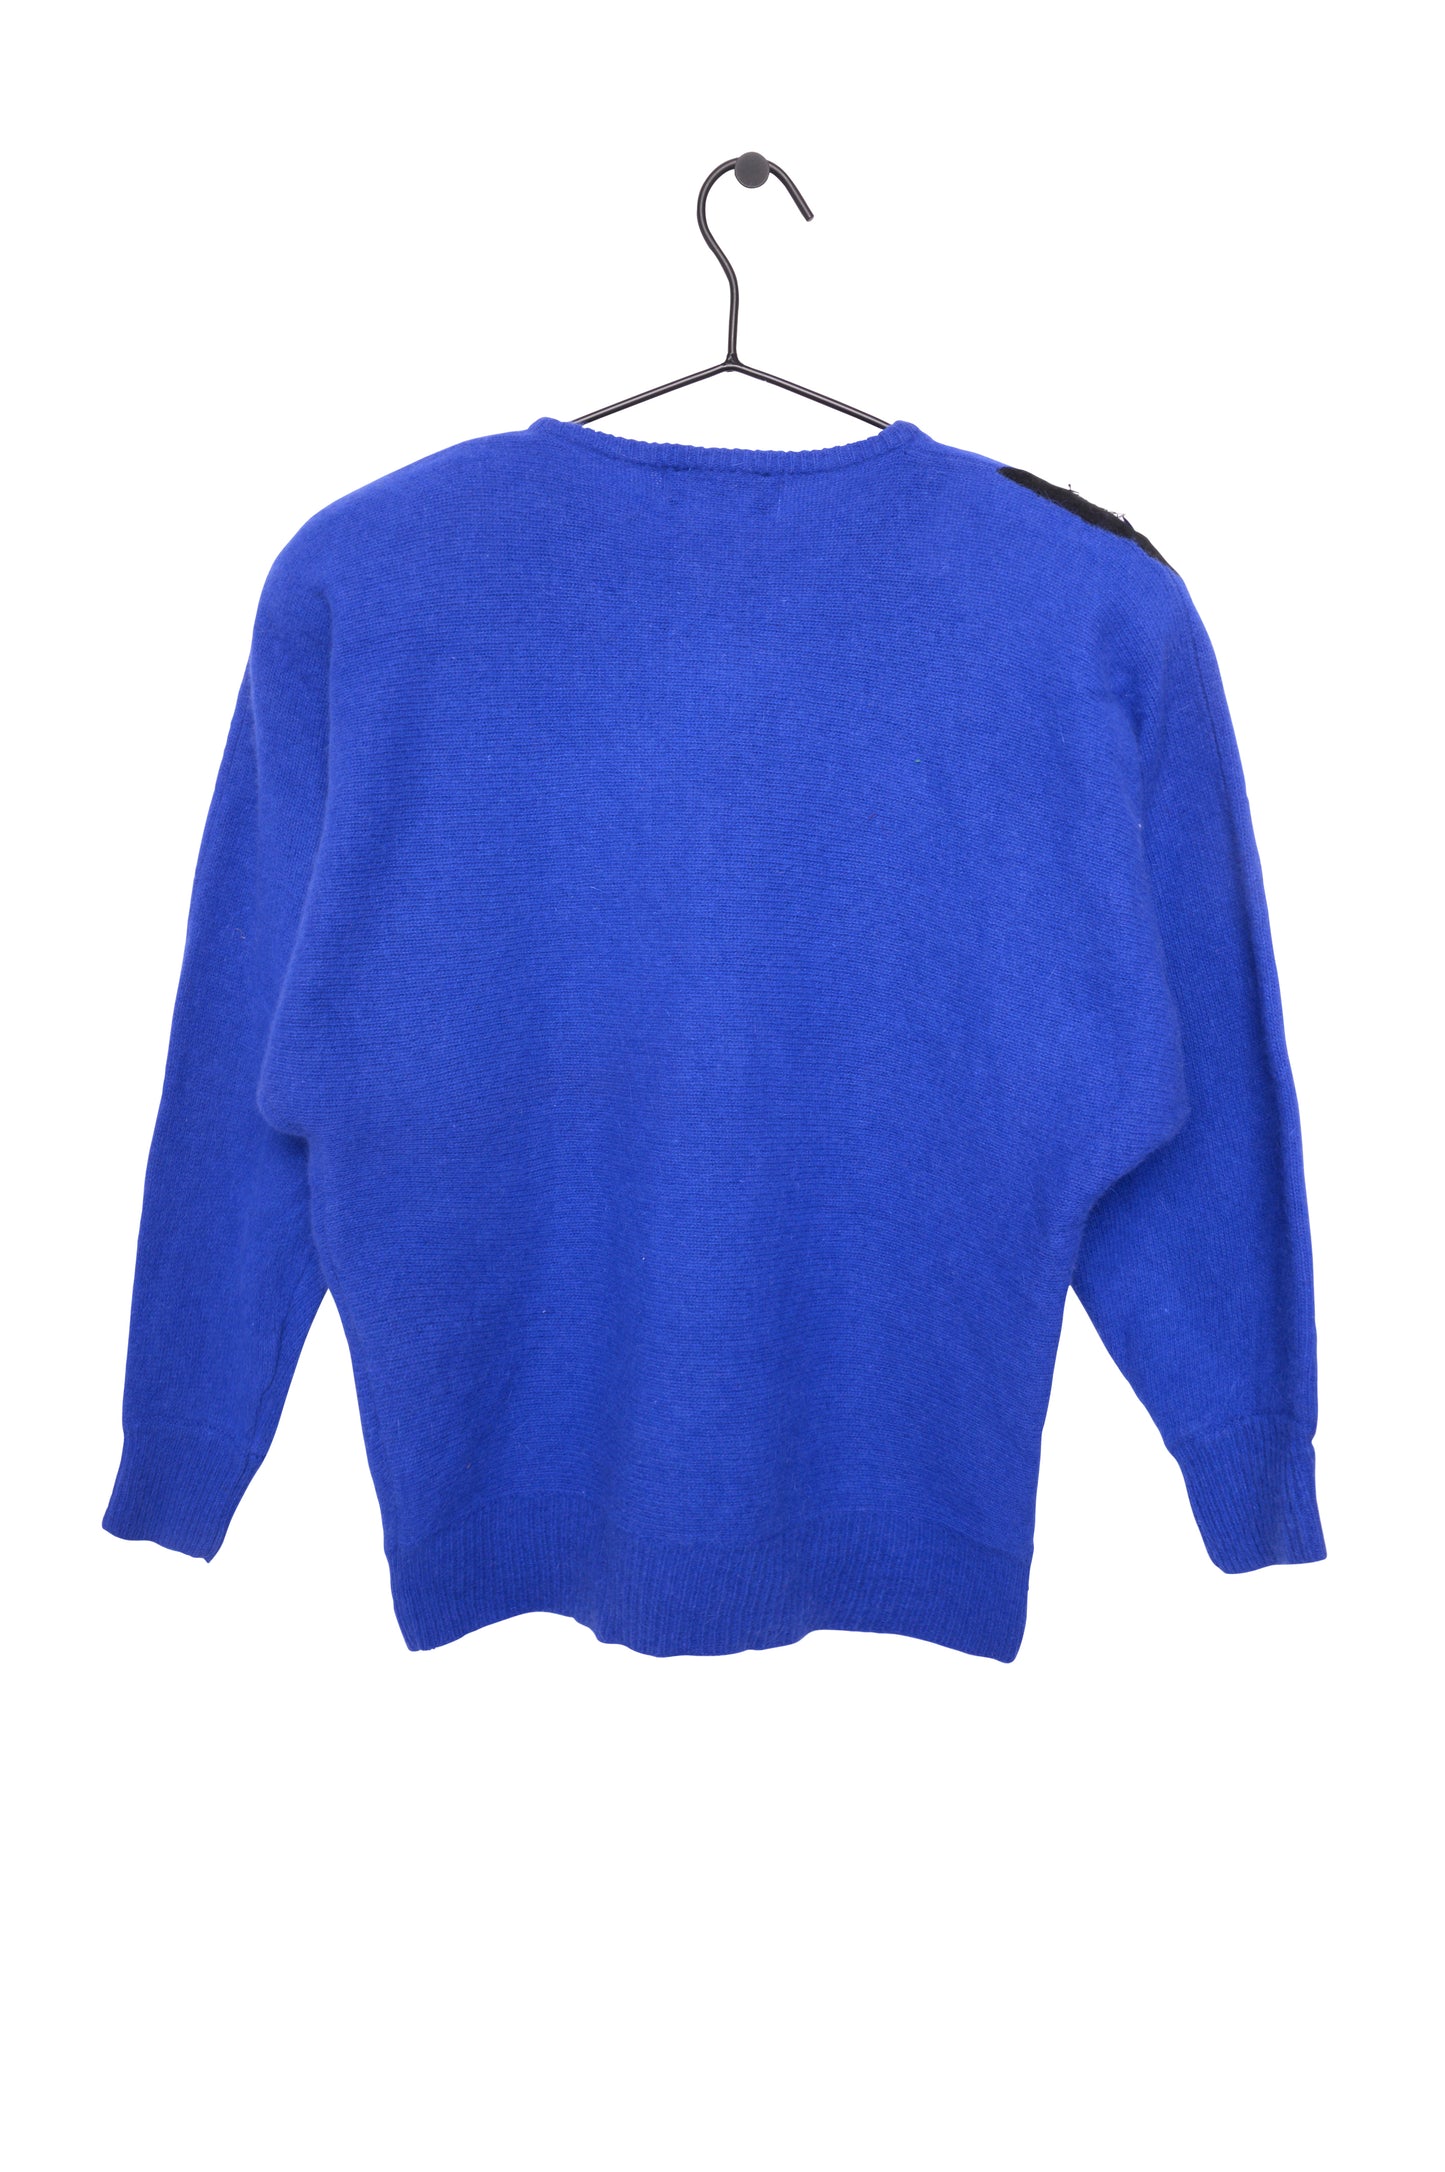 Angora Sequin Sweater